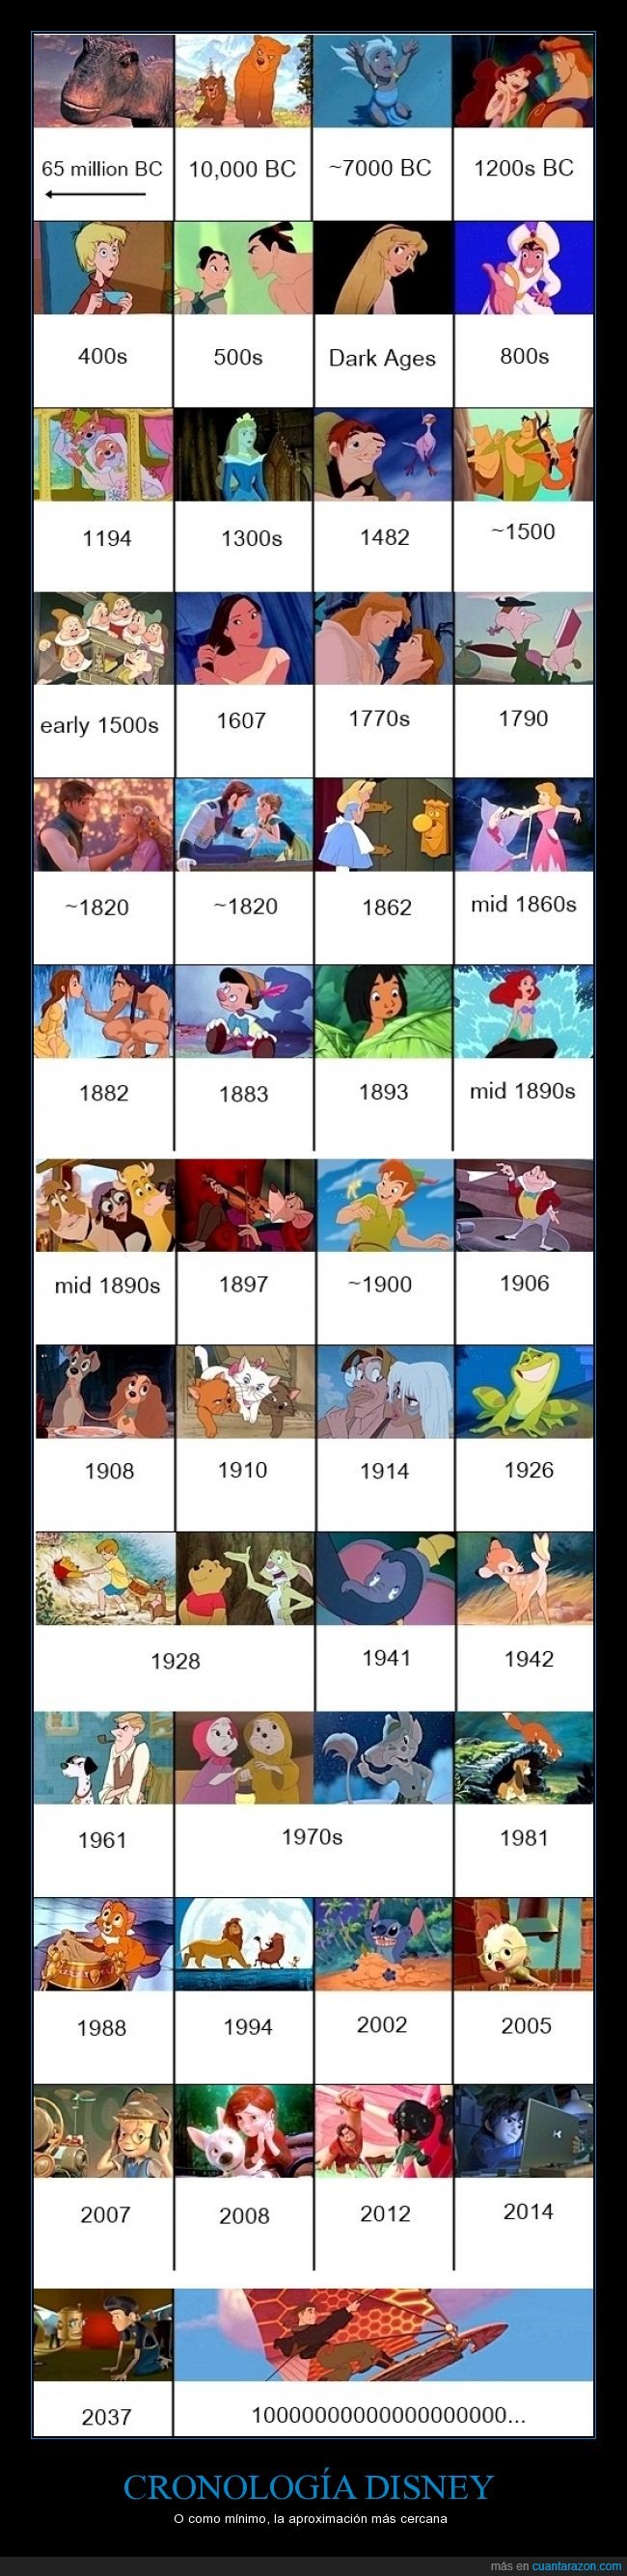 Poniendo orden a la cronología de Disney - O como mínimo, la aproximación más cercana